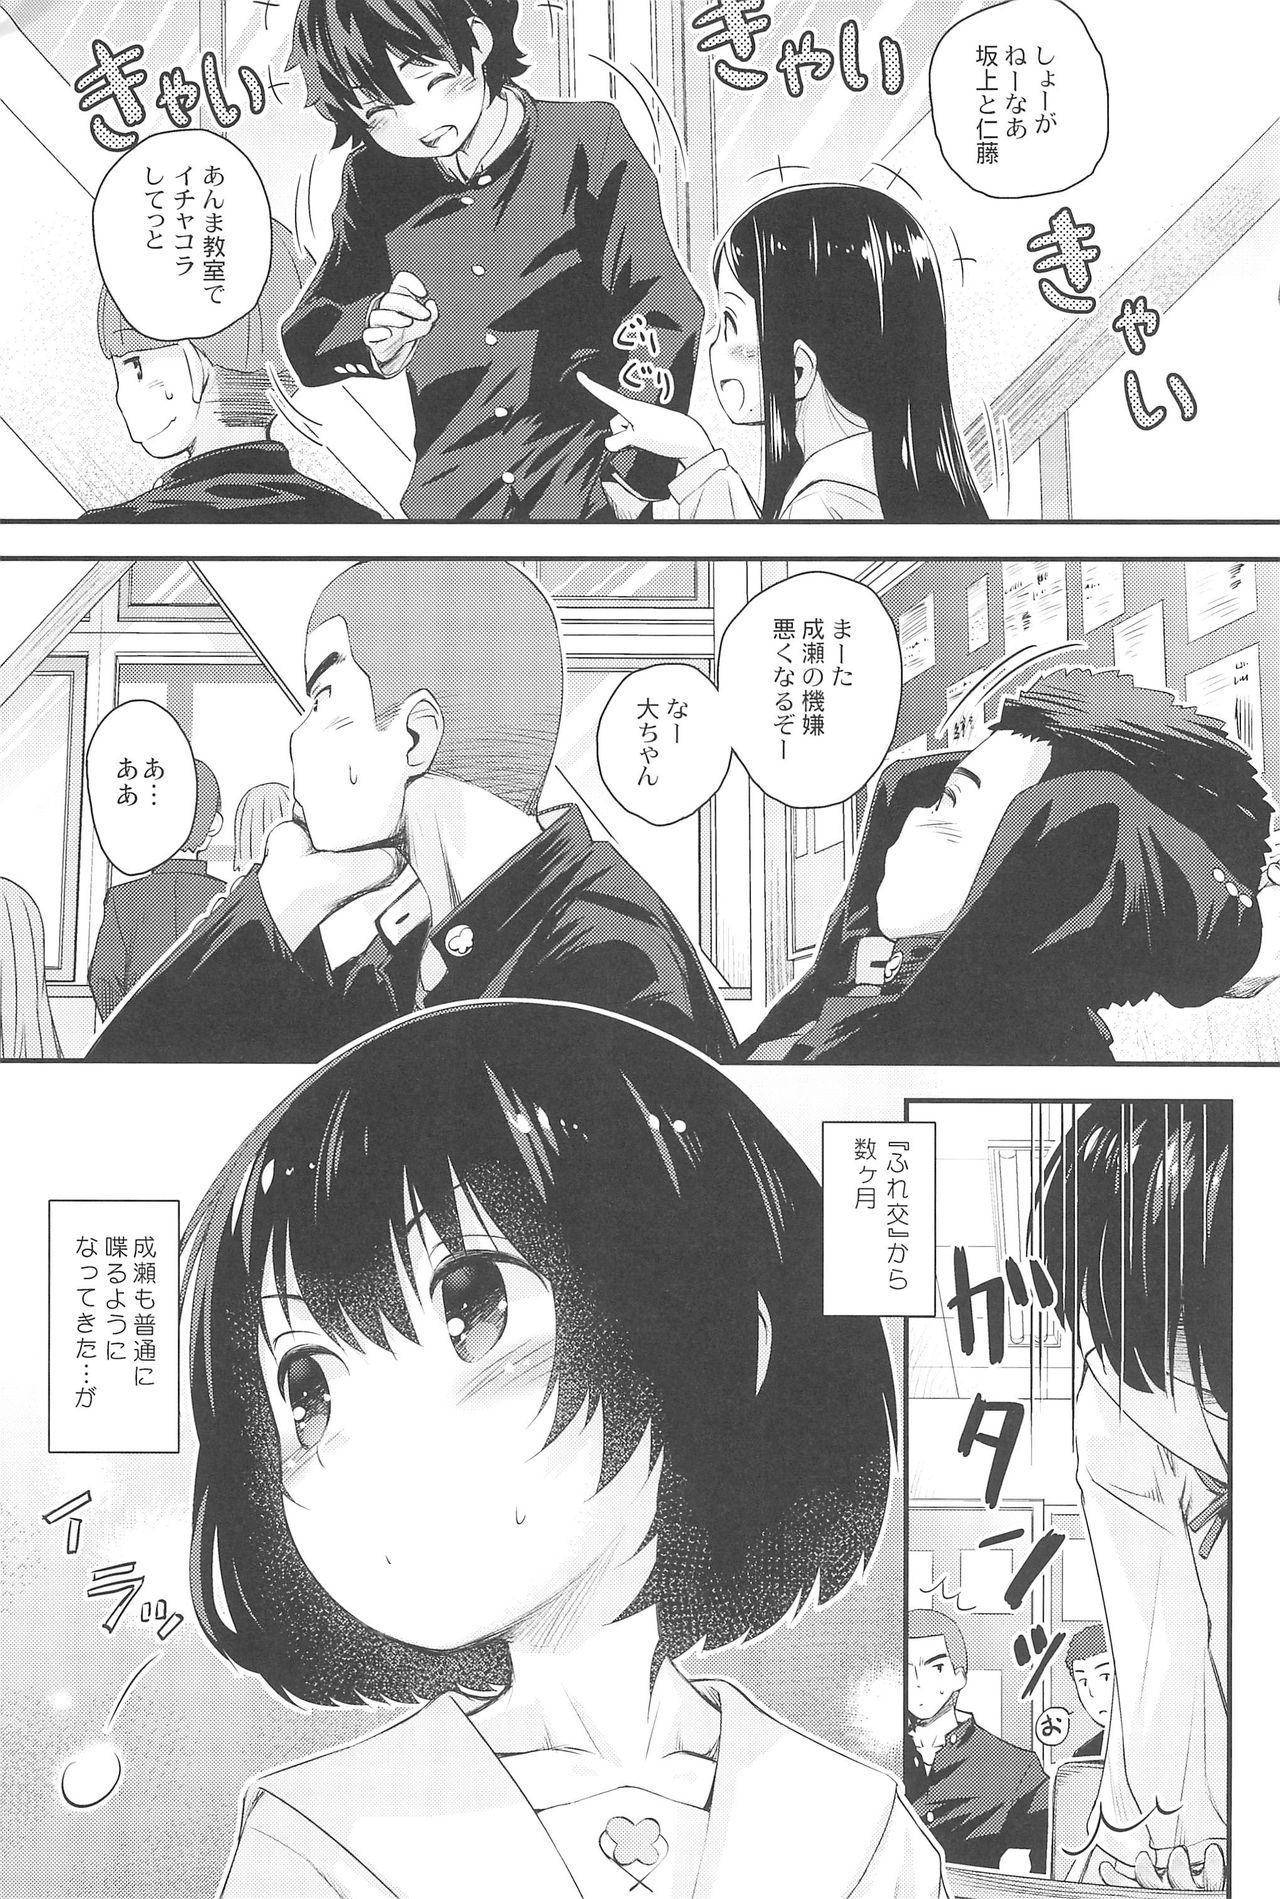 Footworship Jun-chan to Oshiro de Sakebikko shitainda. - Kokoro ga sakebitagatterunda. Amateurs Gone - Page 5